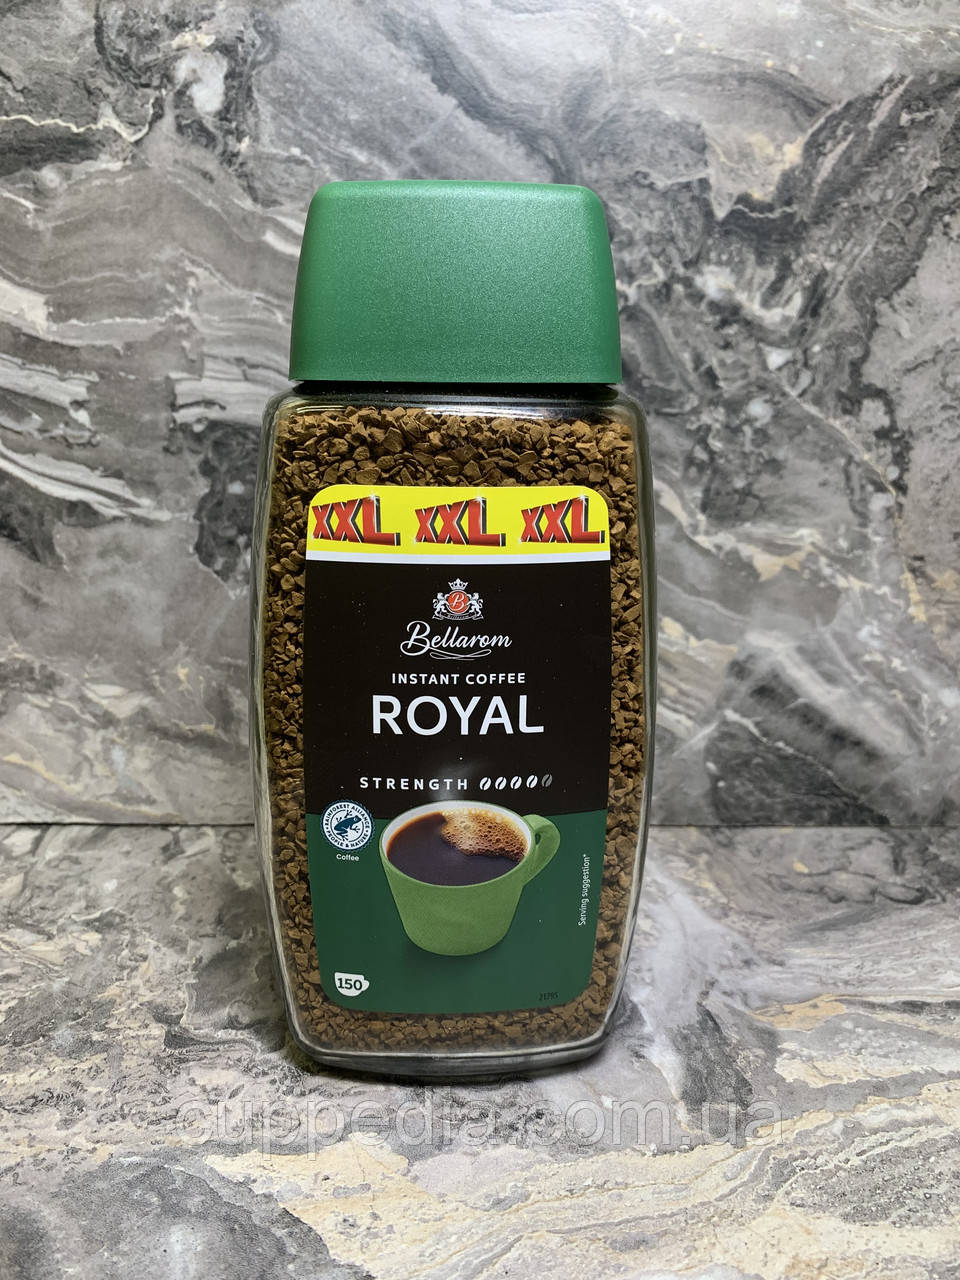 Розчинна кава Bellarom instant coffee Royal 300 грм